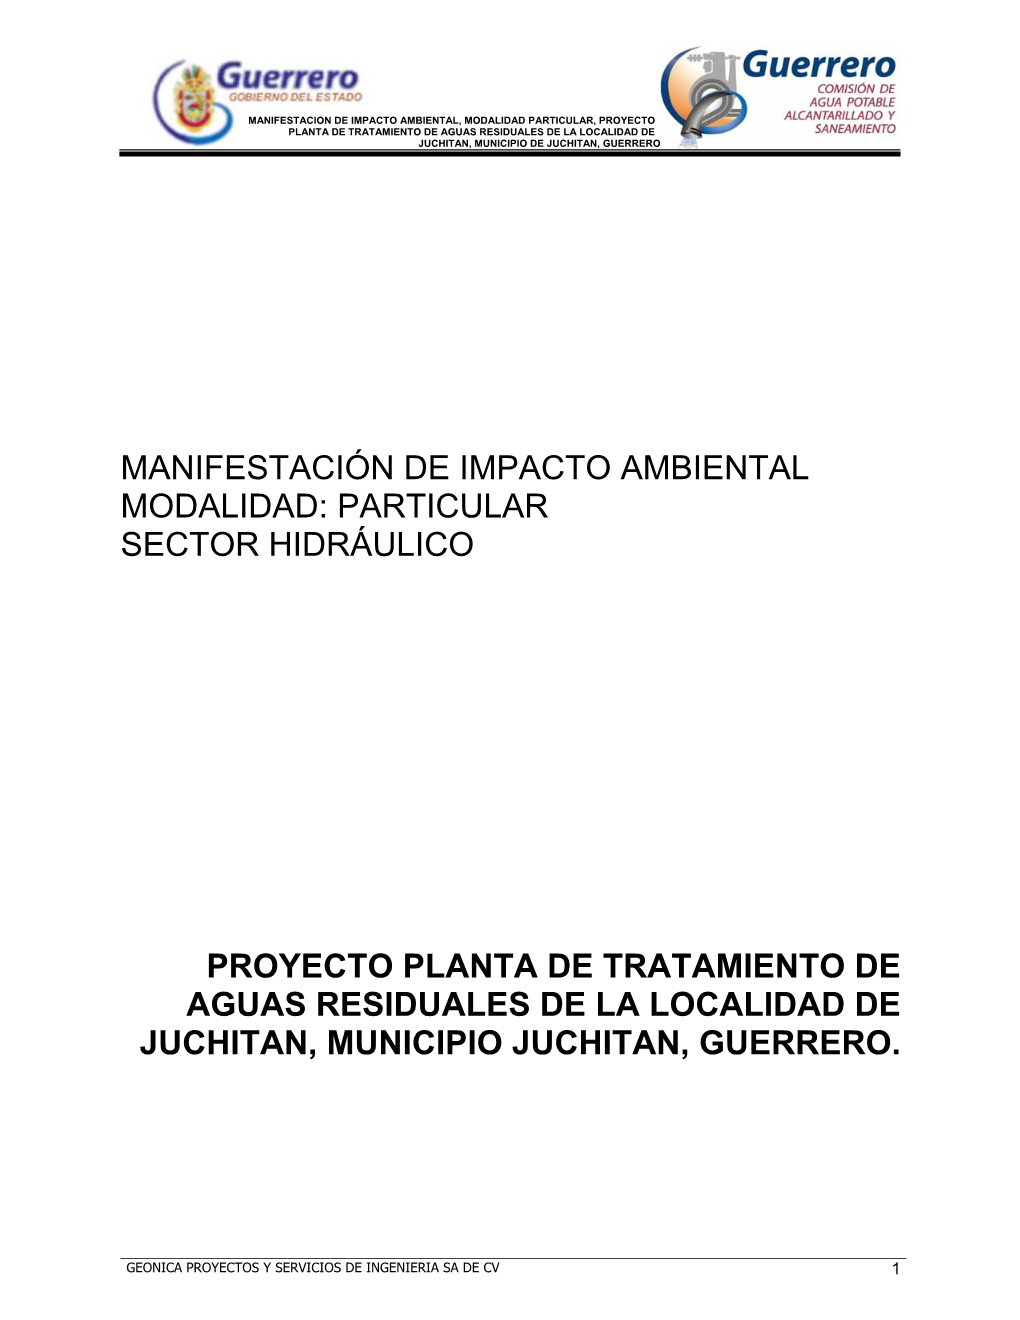 Planta De Tratamiento De Aguas Residuales De La Localidad De Juchitan, Municipio De Juchitan, Guerrero